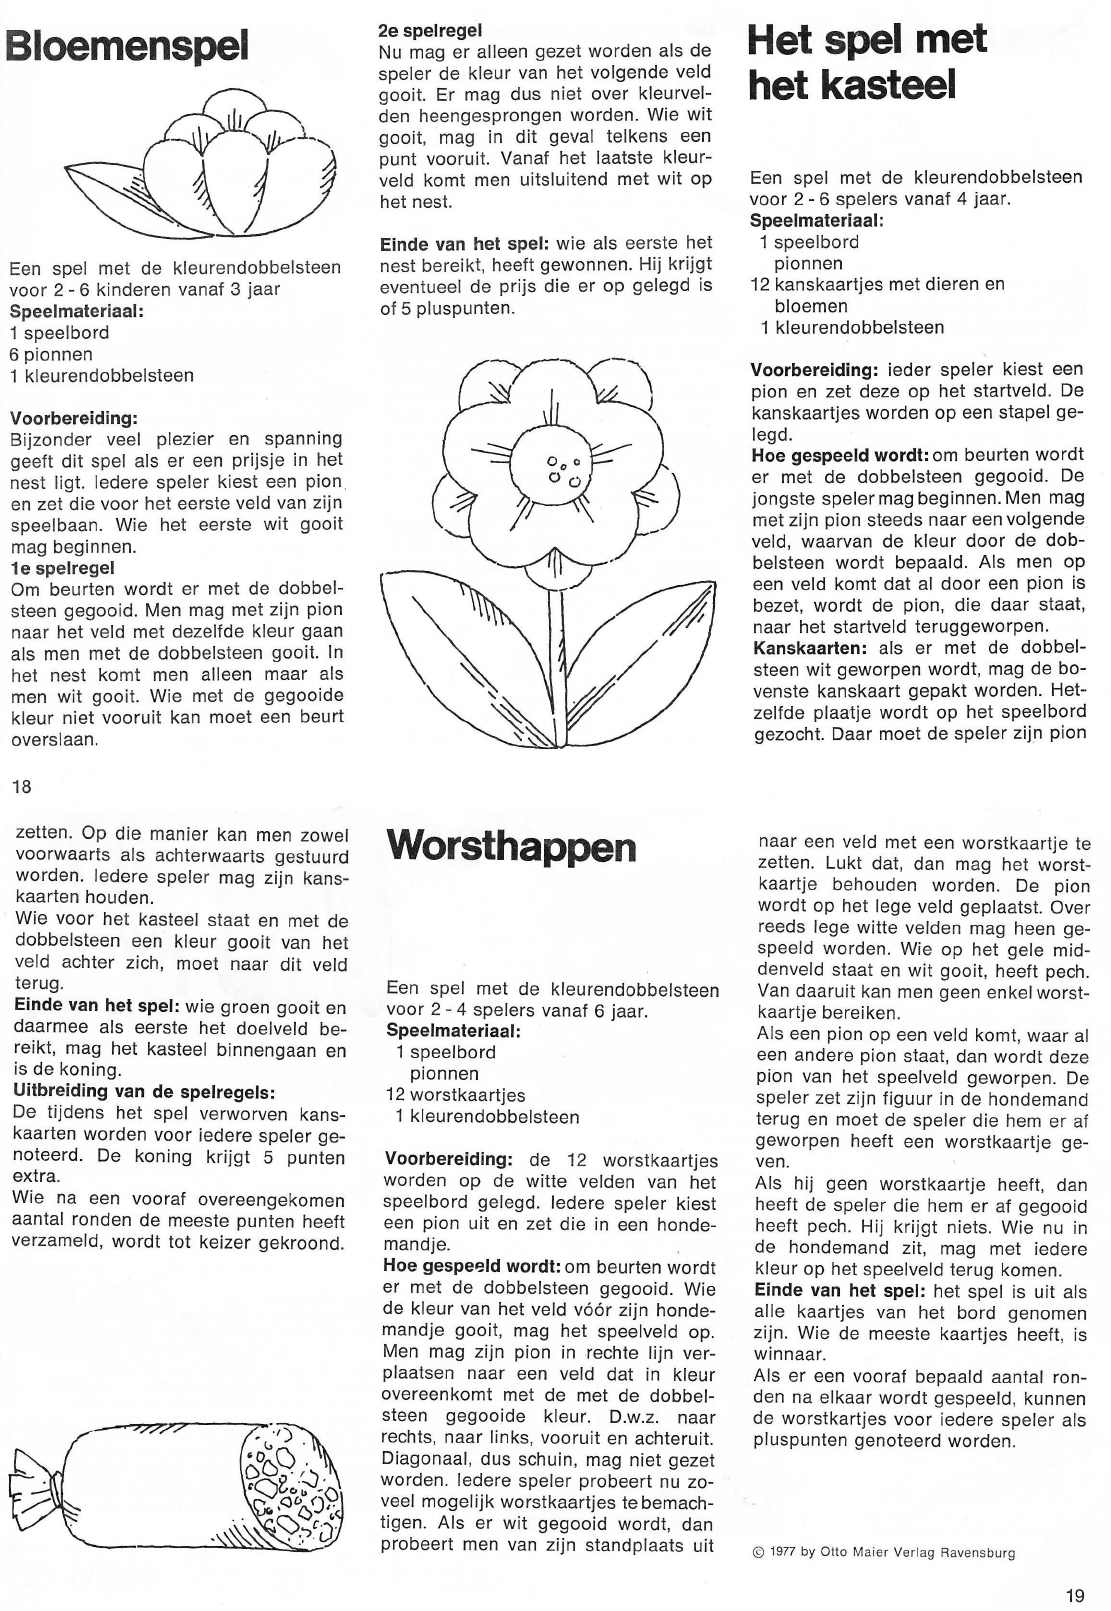 handicap Huisje map Manual Ravensburger 4 eerste spellen (page 1 of 2) (Dutch)